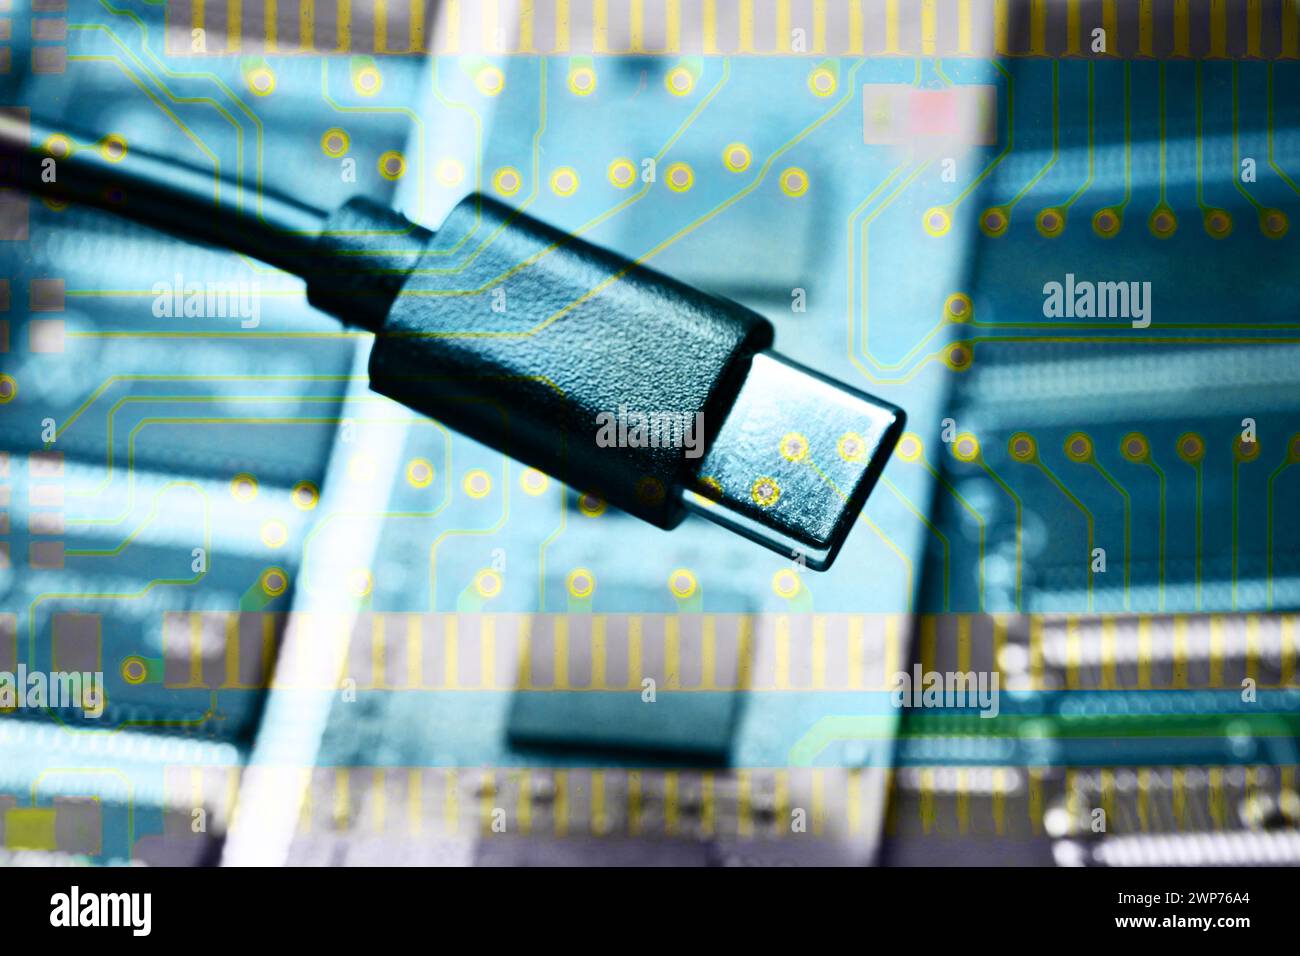 FOTOMONTAGE, piastra computerizzata USB-C-Stecker auf, USB-C als Standardladeanschluss in der EU Foto Stock